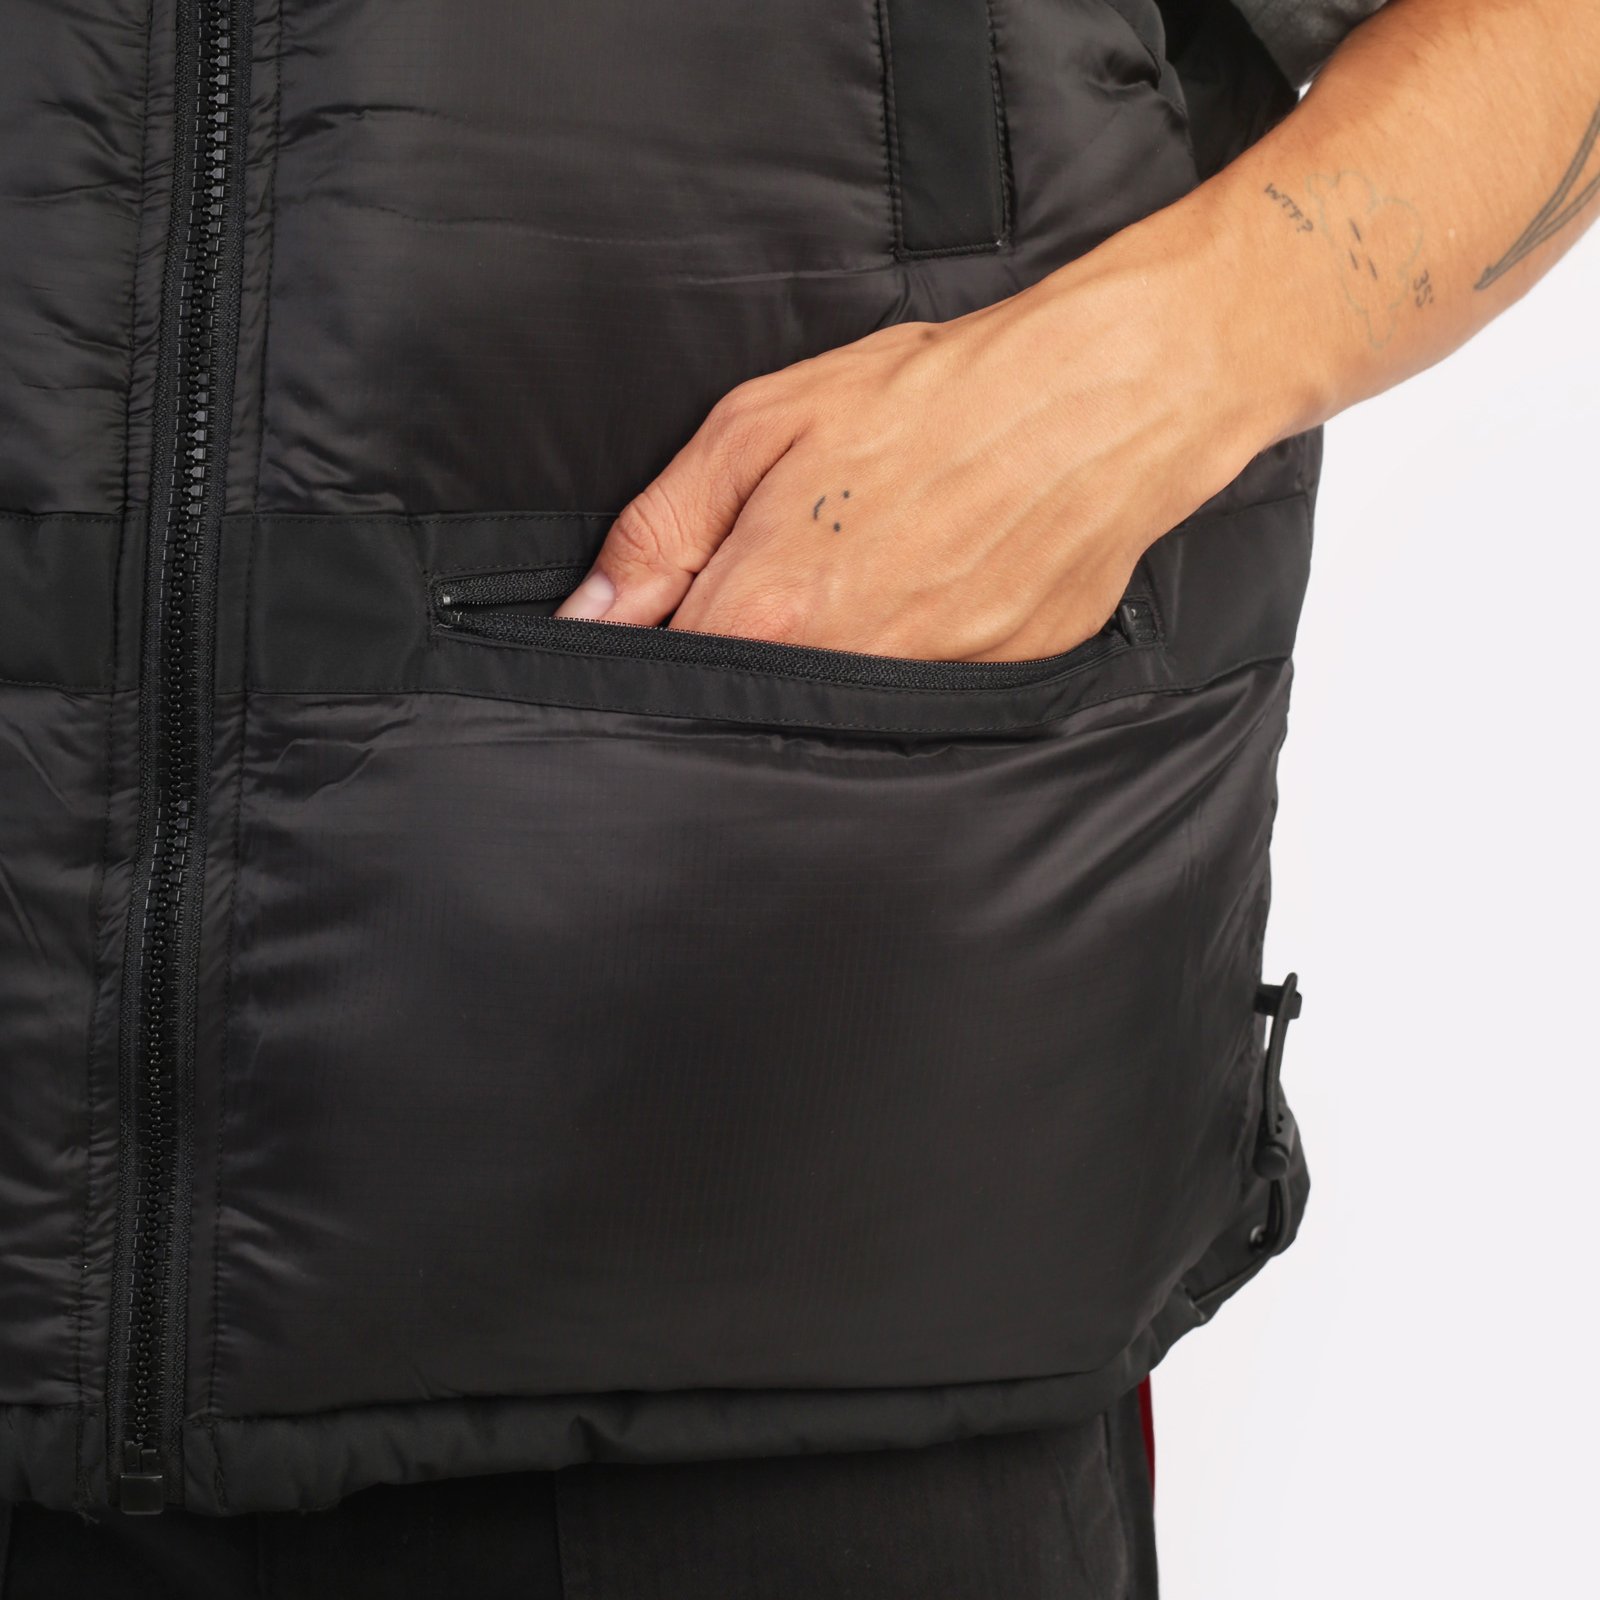 мужской жилет Alpha Industries PCU Mod Vest  (MJU53500C1-black)  - цена, описание, фото 6